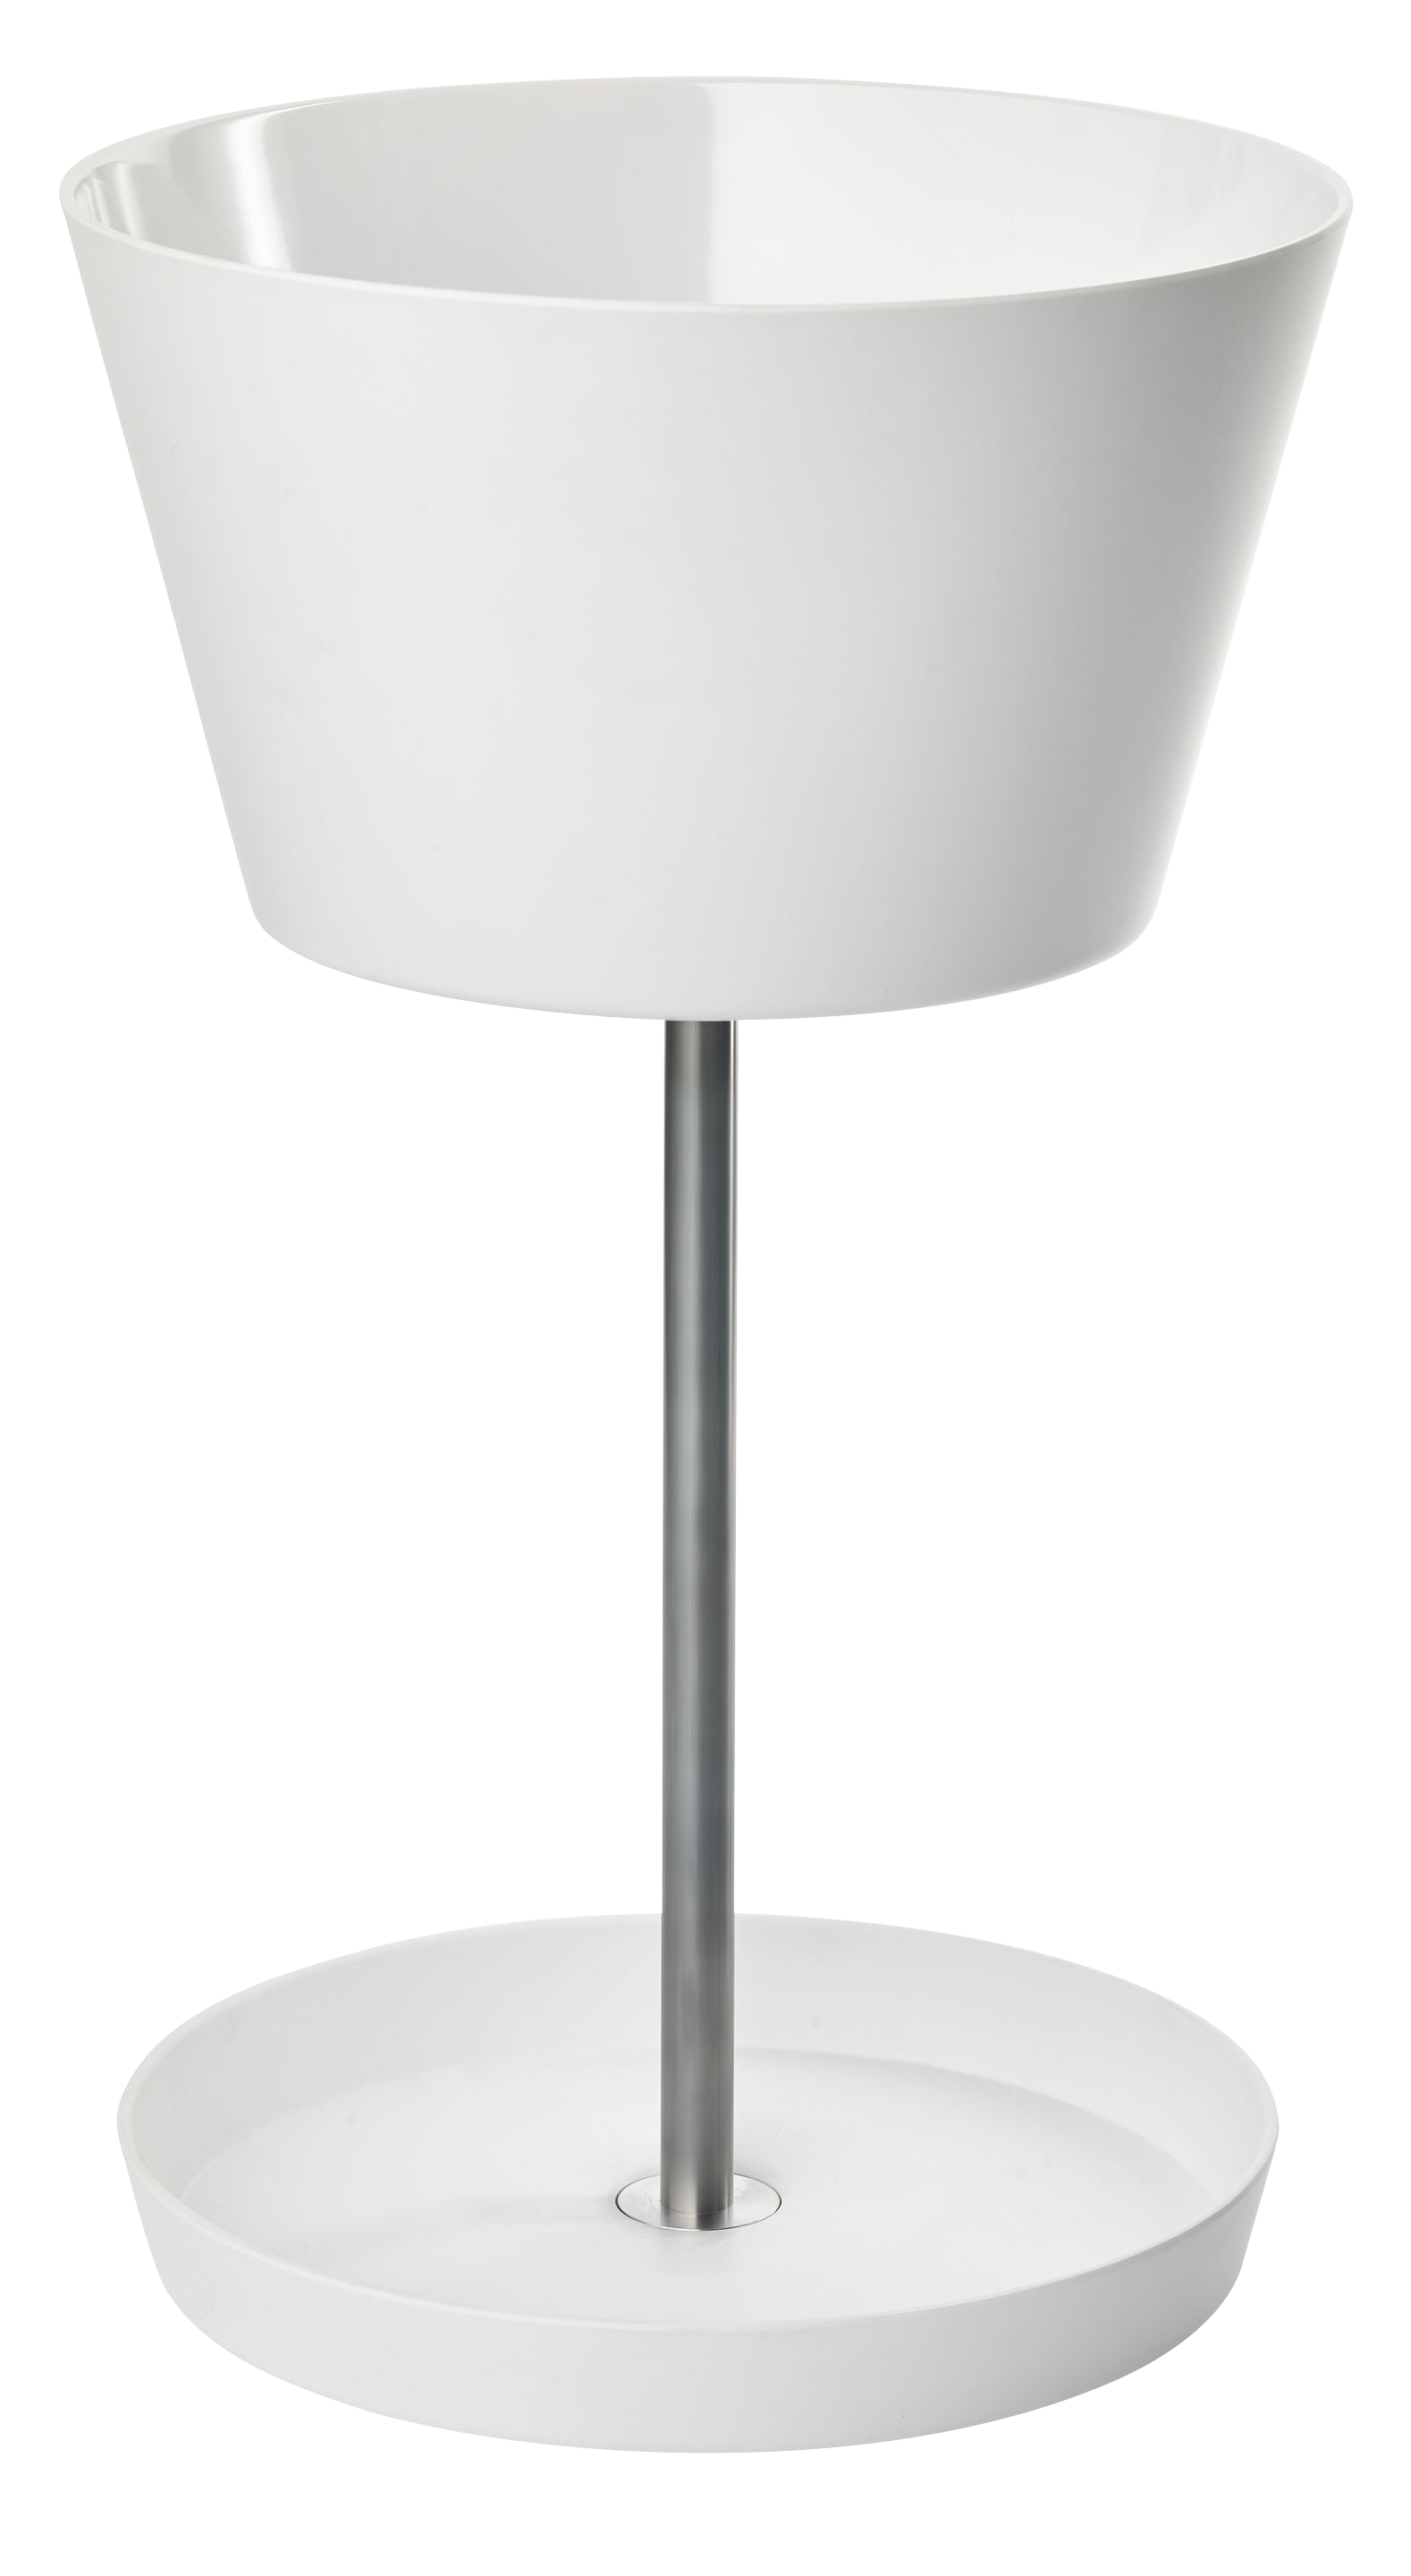 BASKET Schirmständer in weiss präsentiert im Onlineshop von KAQTU Design AG. Schirmständer ist von Pieperconcept